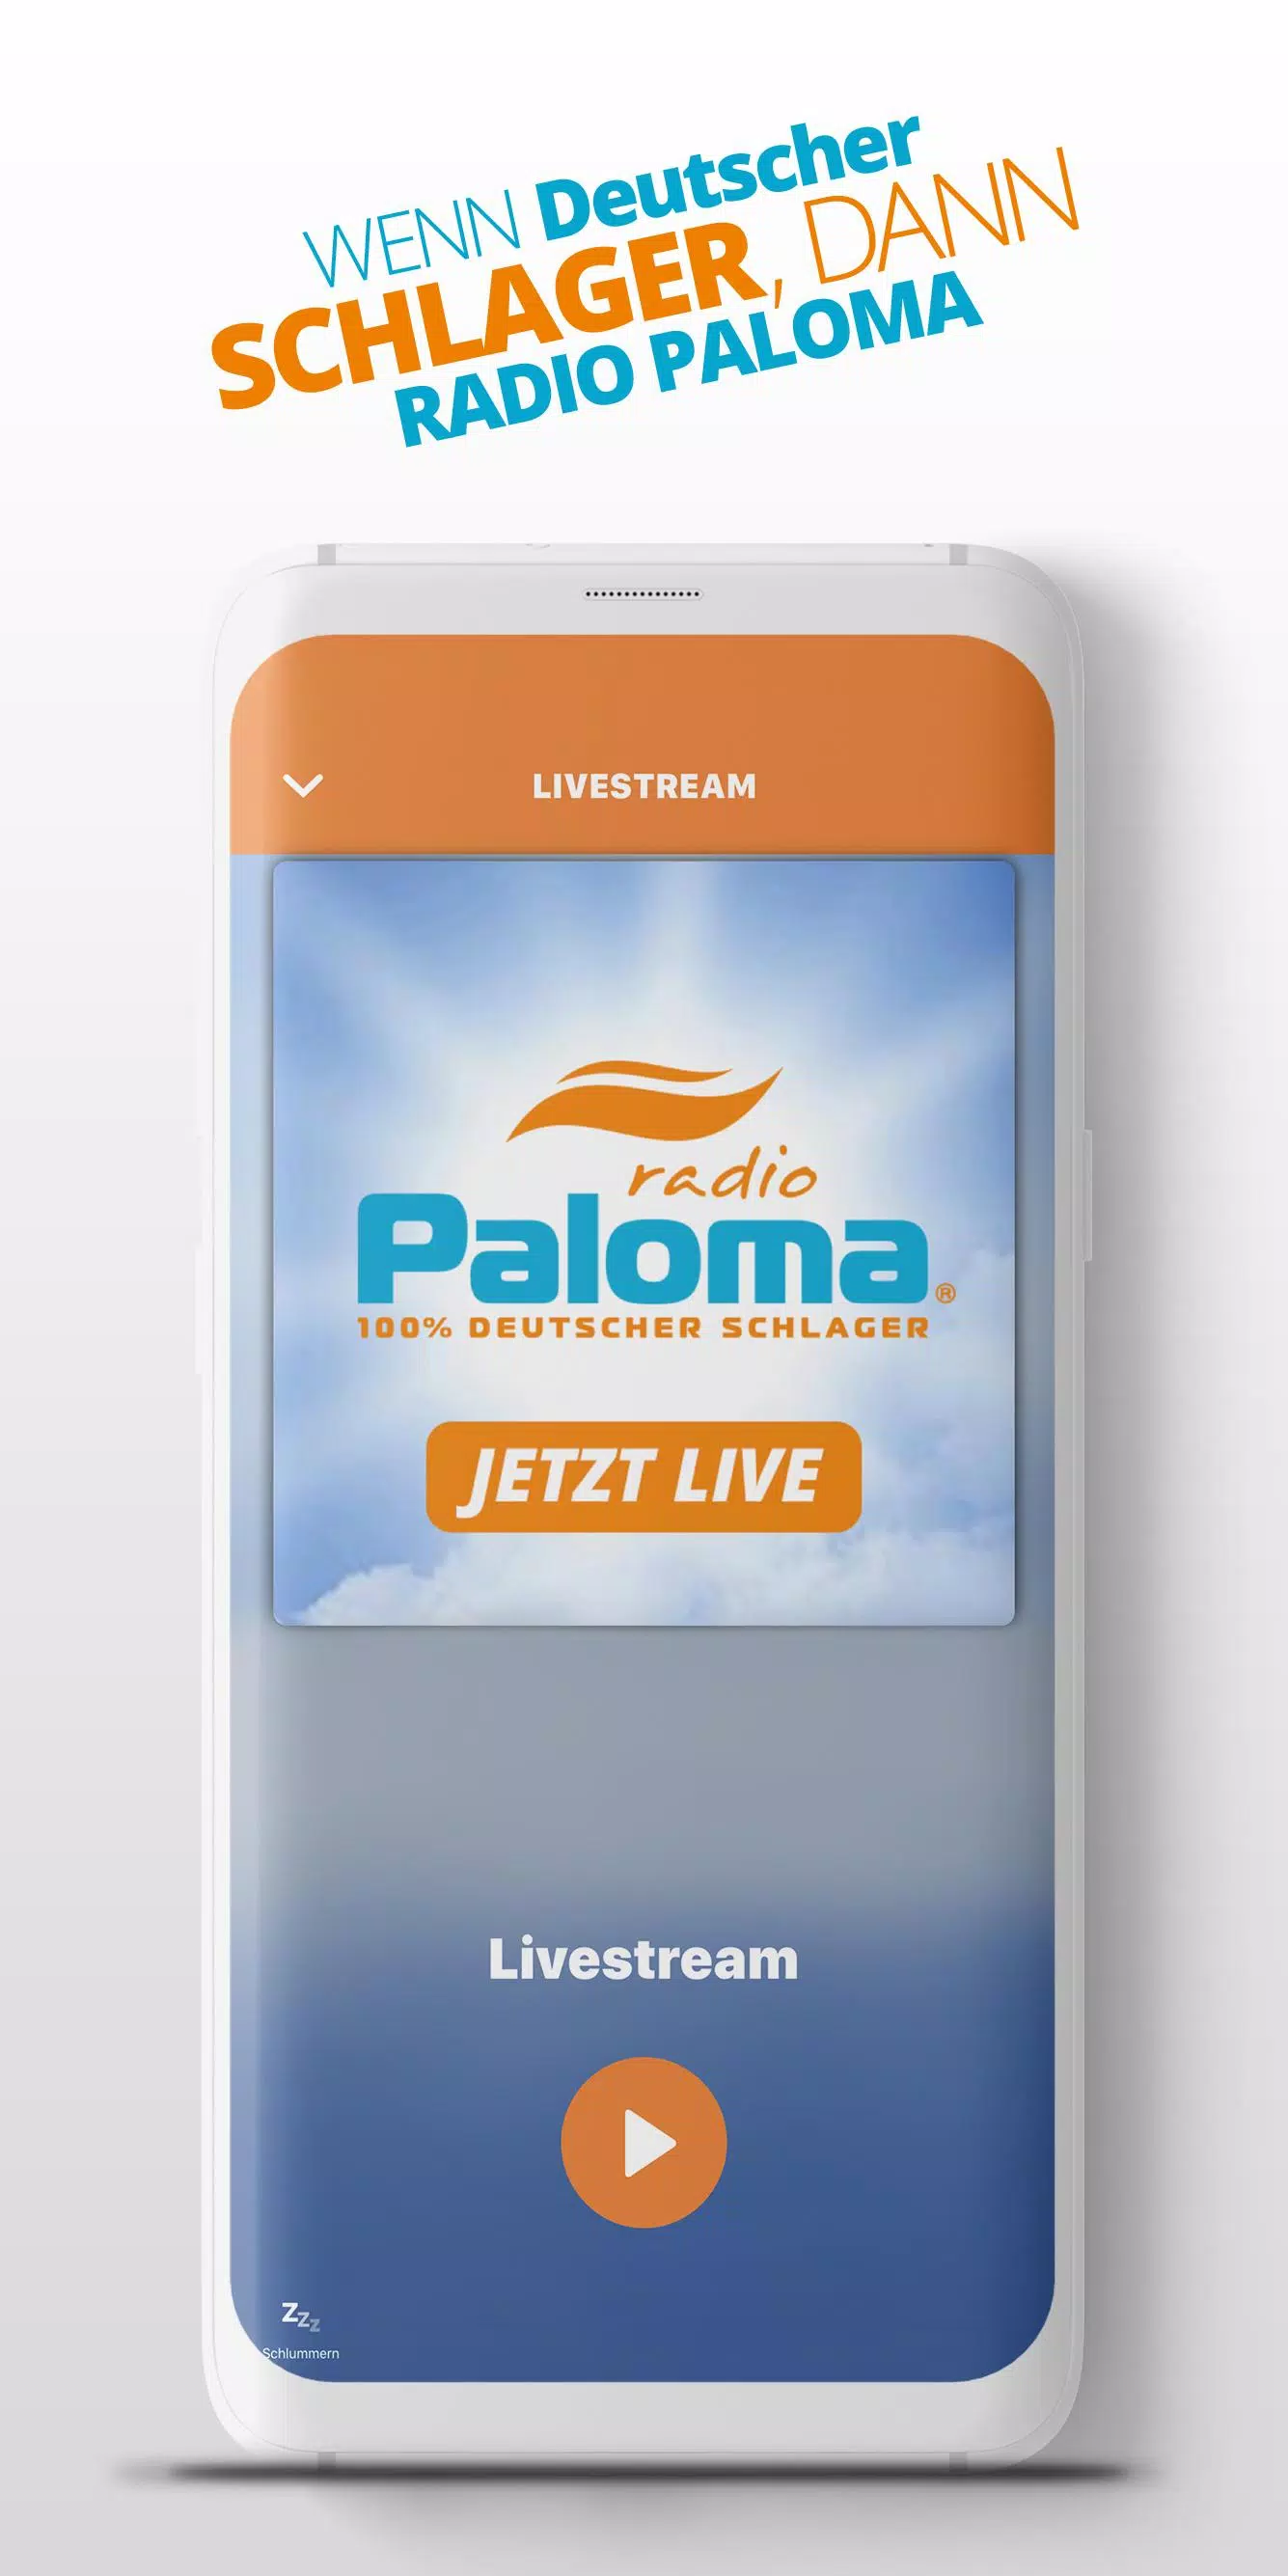 Schlager Radio Paloma - 100% Deutscher Schlager APK for Android Download